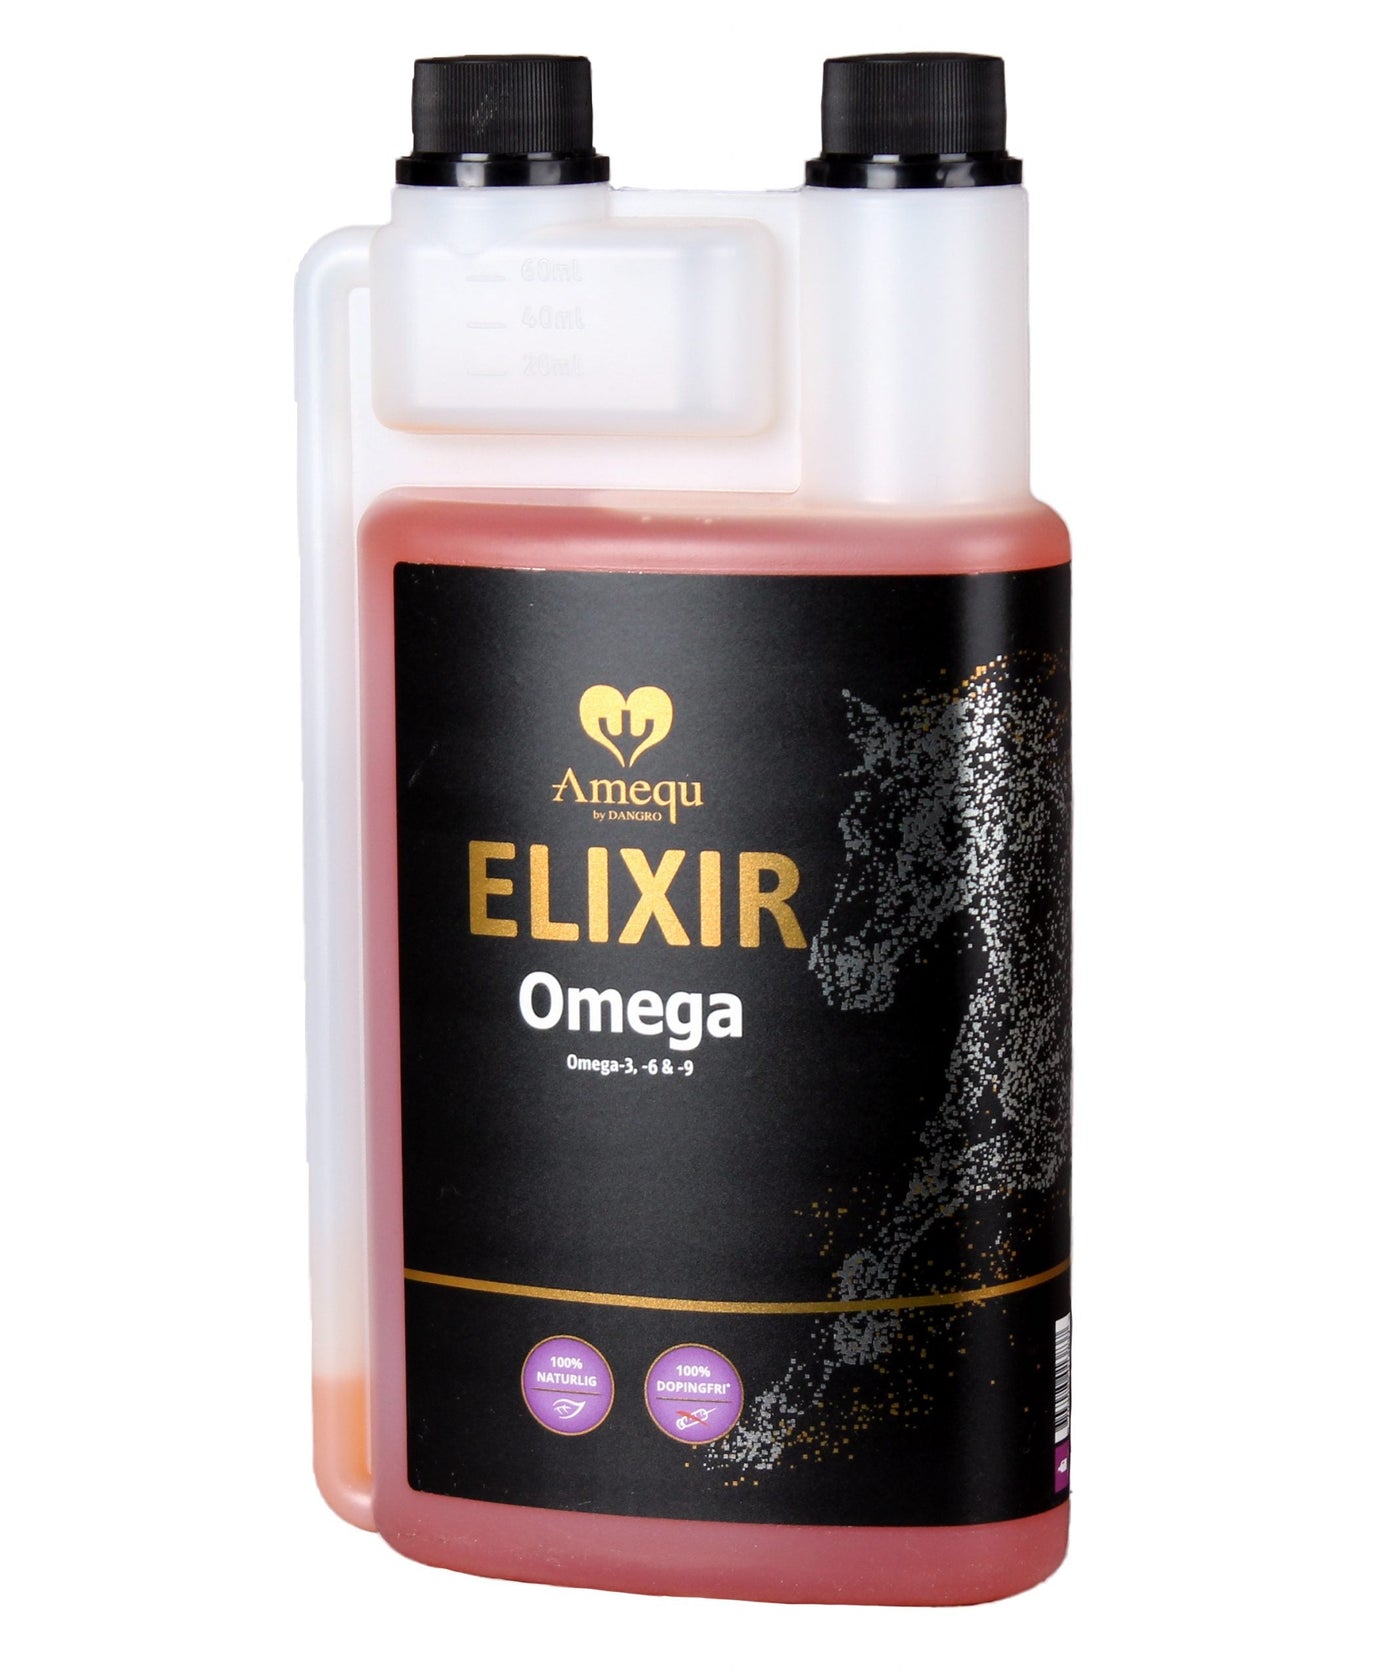 Amequ Elixir Omega 0,5L - Bestillingsvare